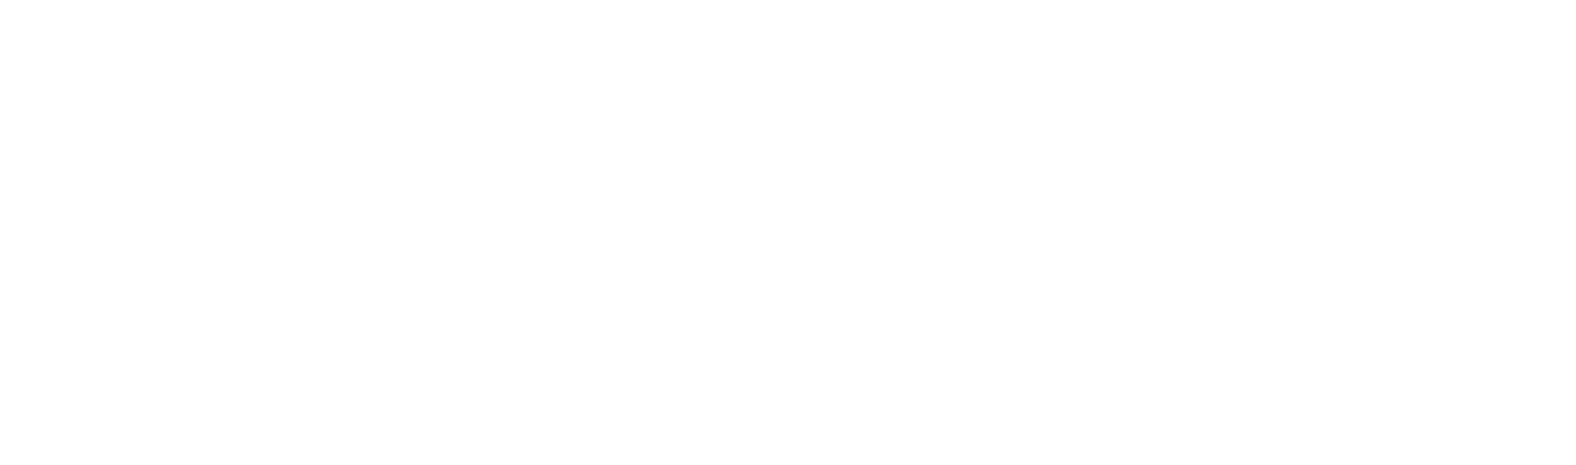 Northern Trust
 logo large for dark backgrounds (transparent PNG)